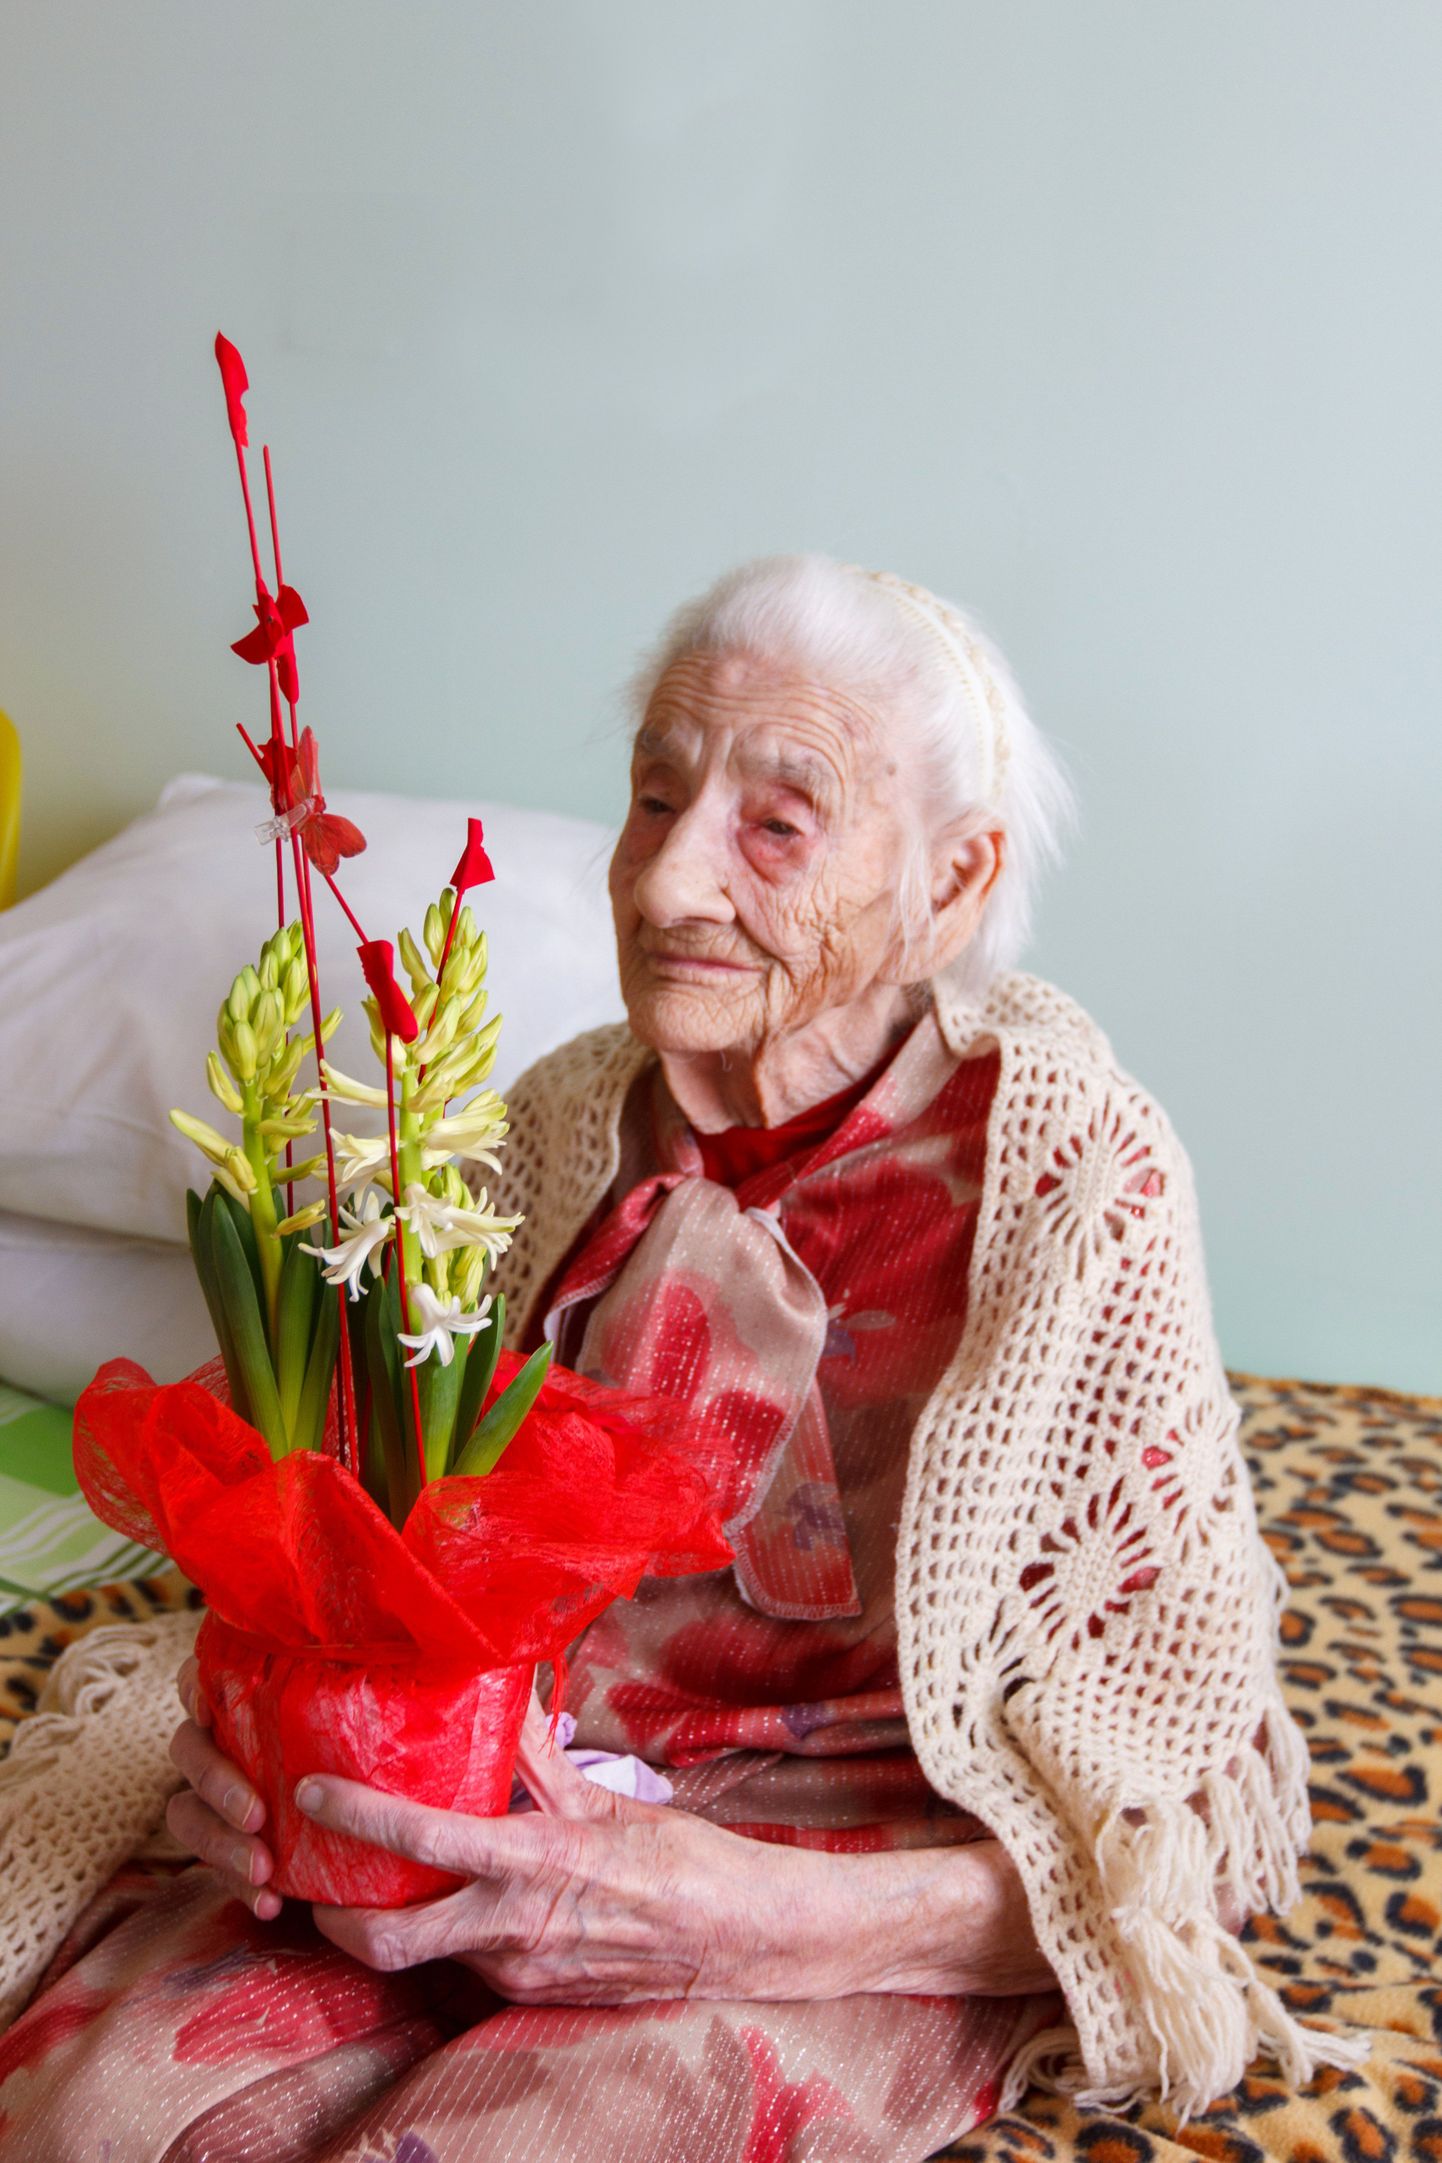 Neljapäeval võttis Elfriede Barth Valga haigla hooldekodus vastu õnnitlusi nii sugulastelt kui teistelt, kes teda auväärsel tähtpäeval meeles pidasid.